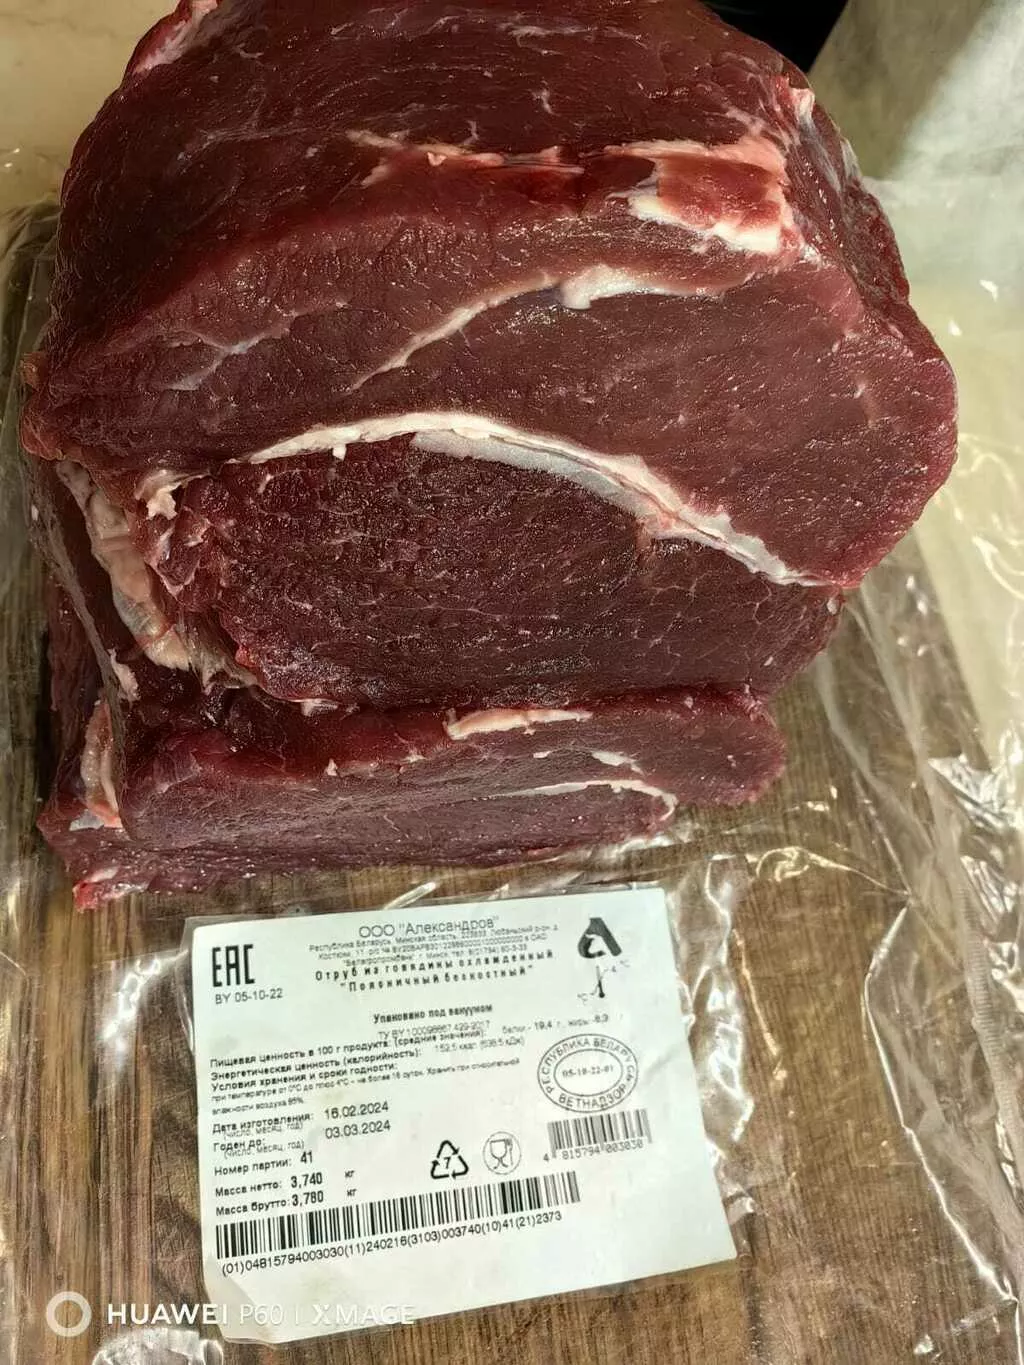 мясо быка говядина беларусь на побережье в Краснодаре и Краснодарском крае 6